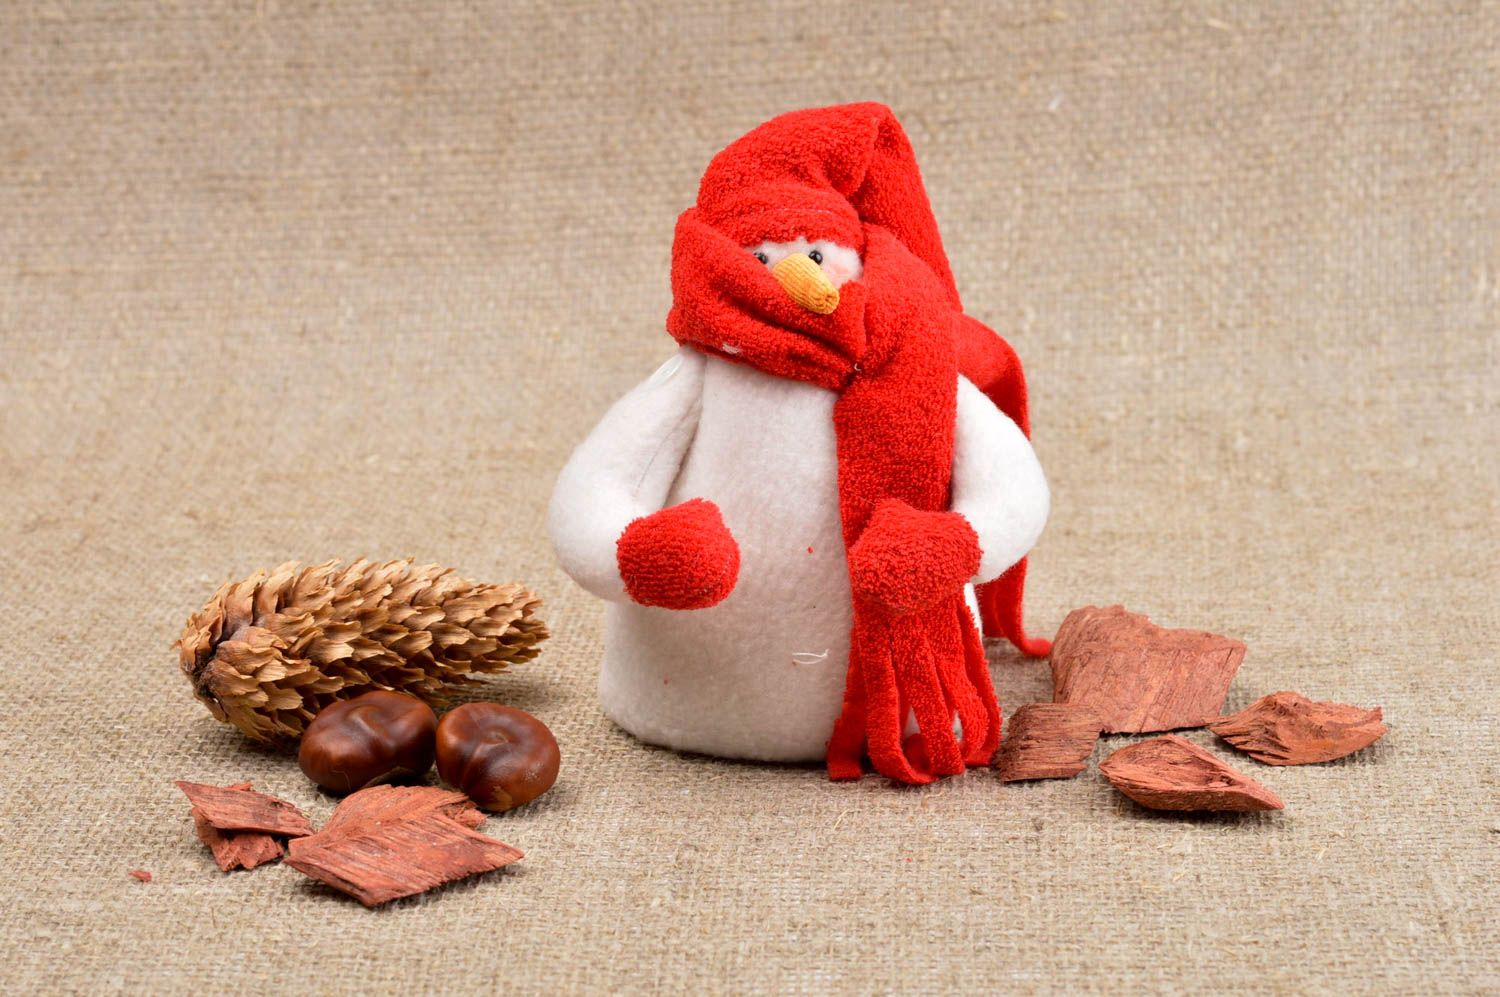 Игрушка Снеговик ручной работы детская игрушка красивая мягкая игрушка для детей фото 1